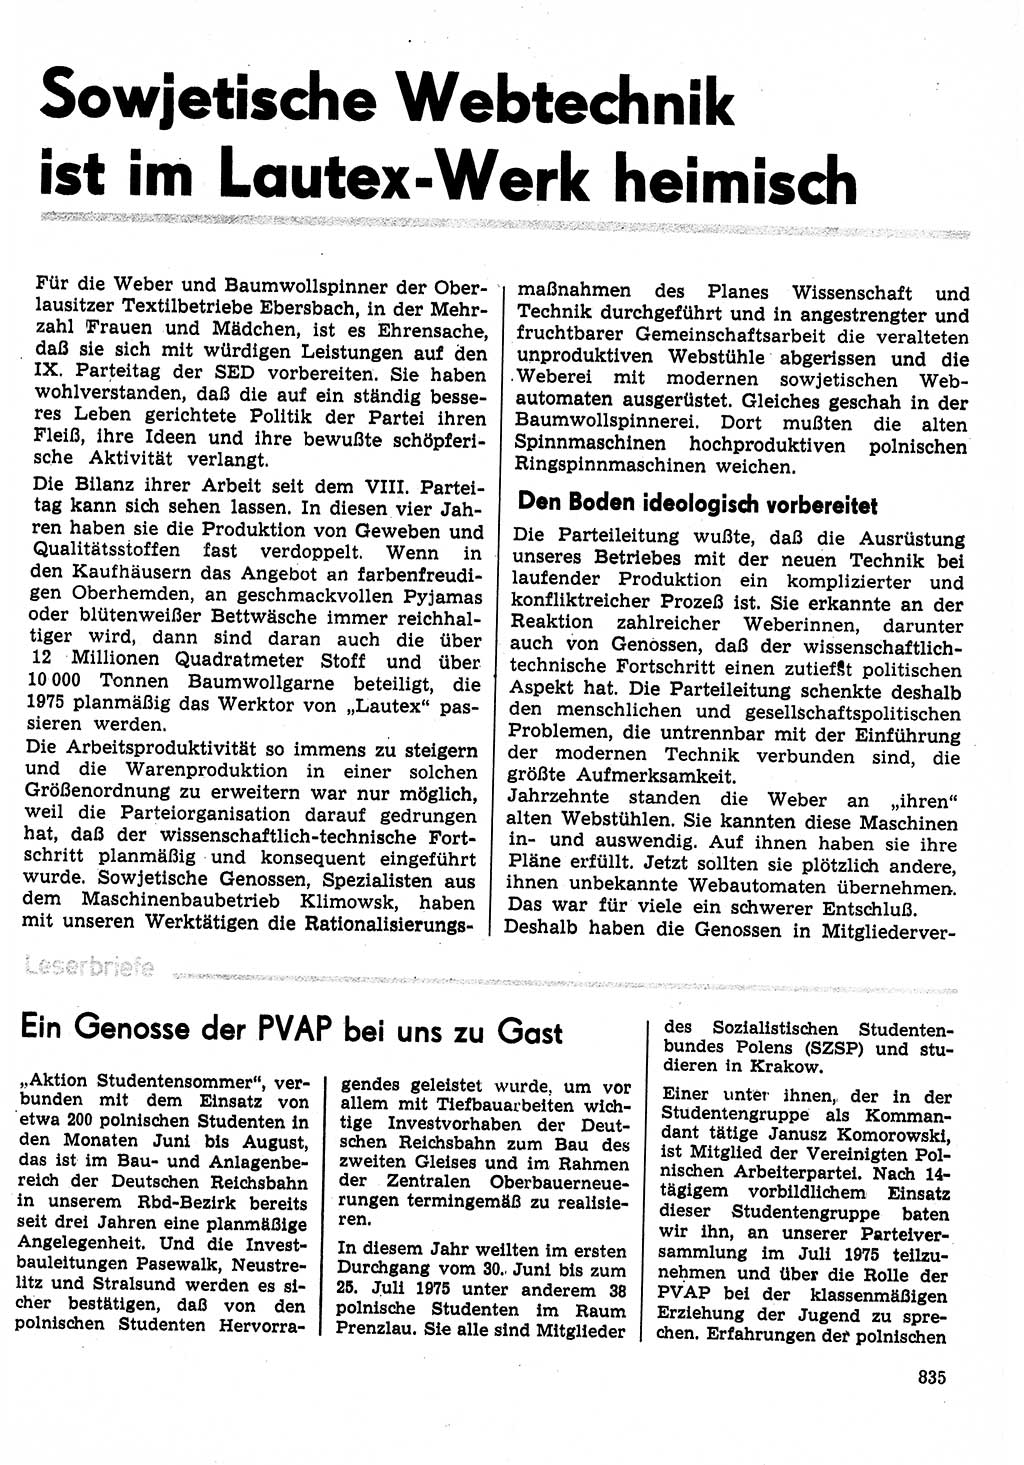 Neuer Weg (NW), Organ des Zentralkomitees (ZK) der SED (Sozialistische Einheitspartei Deutschlands) für Fragen des Parteilebens, 30. Jahrgang [Deutsche Demokratische Republik (DDR)] 1975, Seite 835 (NW ZK SED DDR 1975, S. 835)